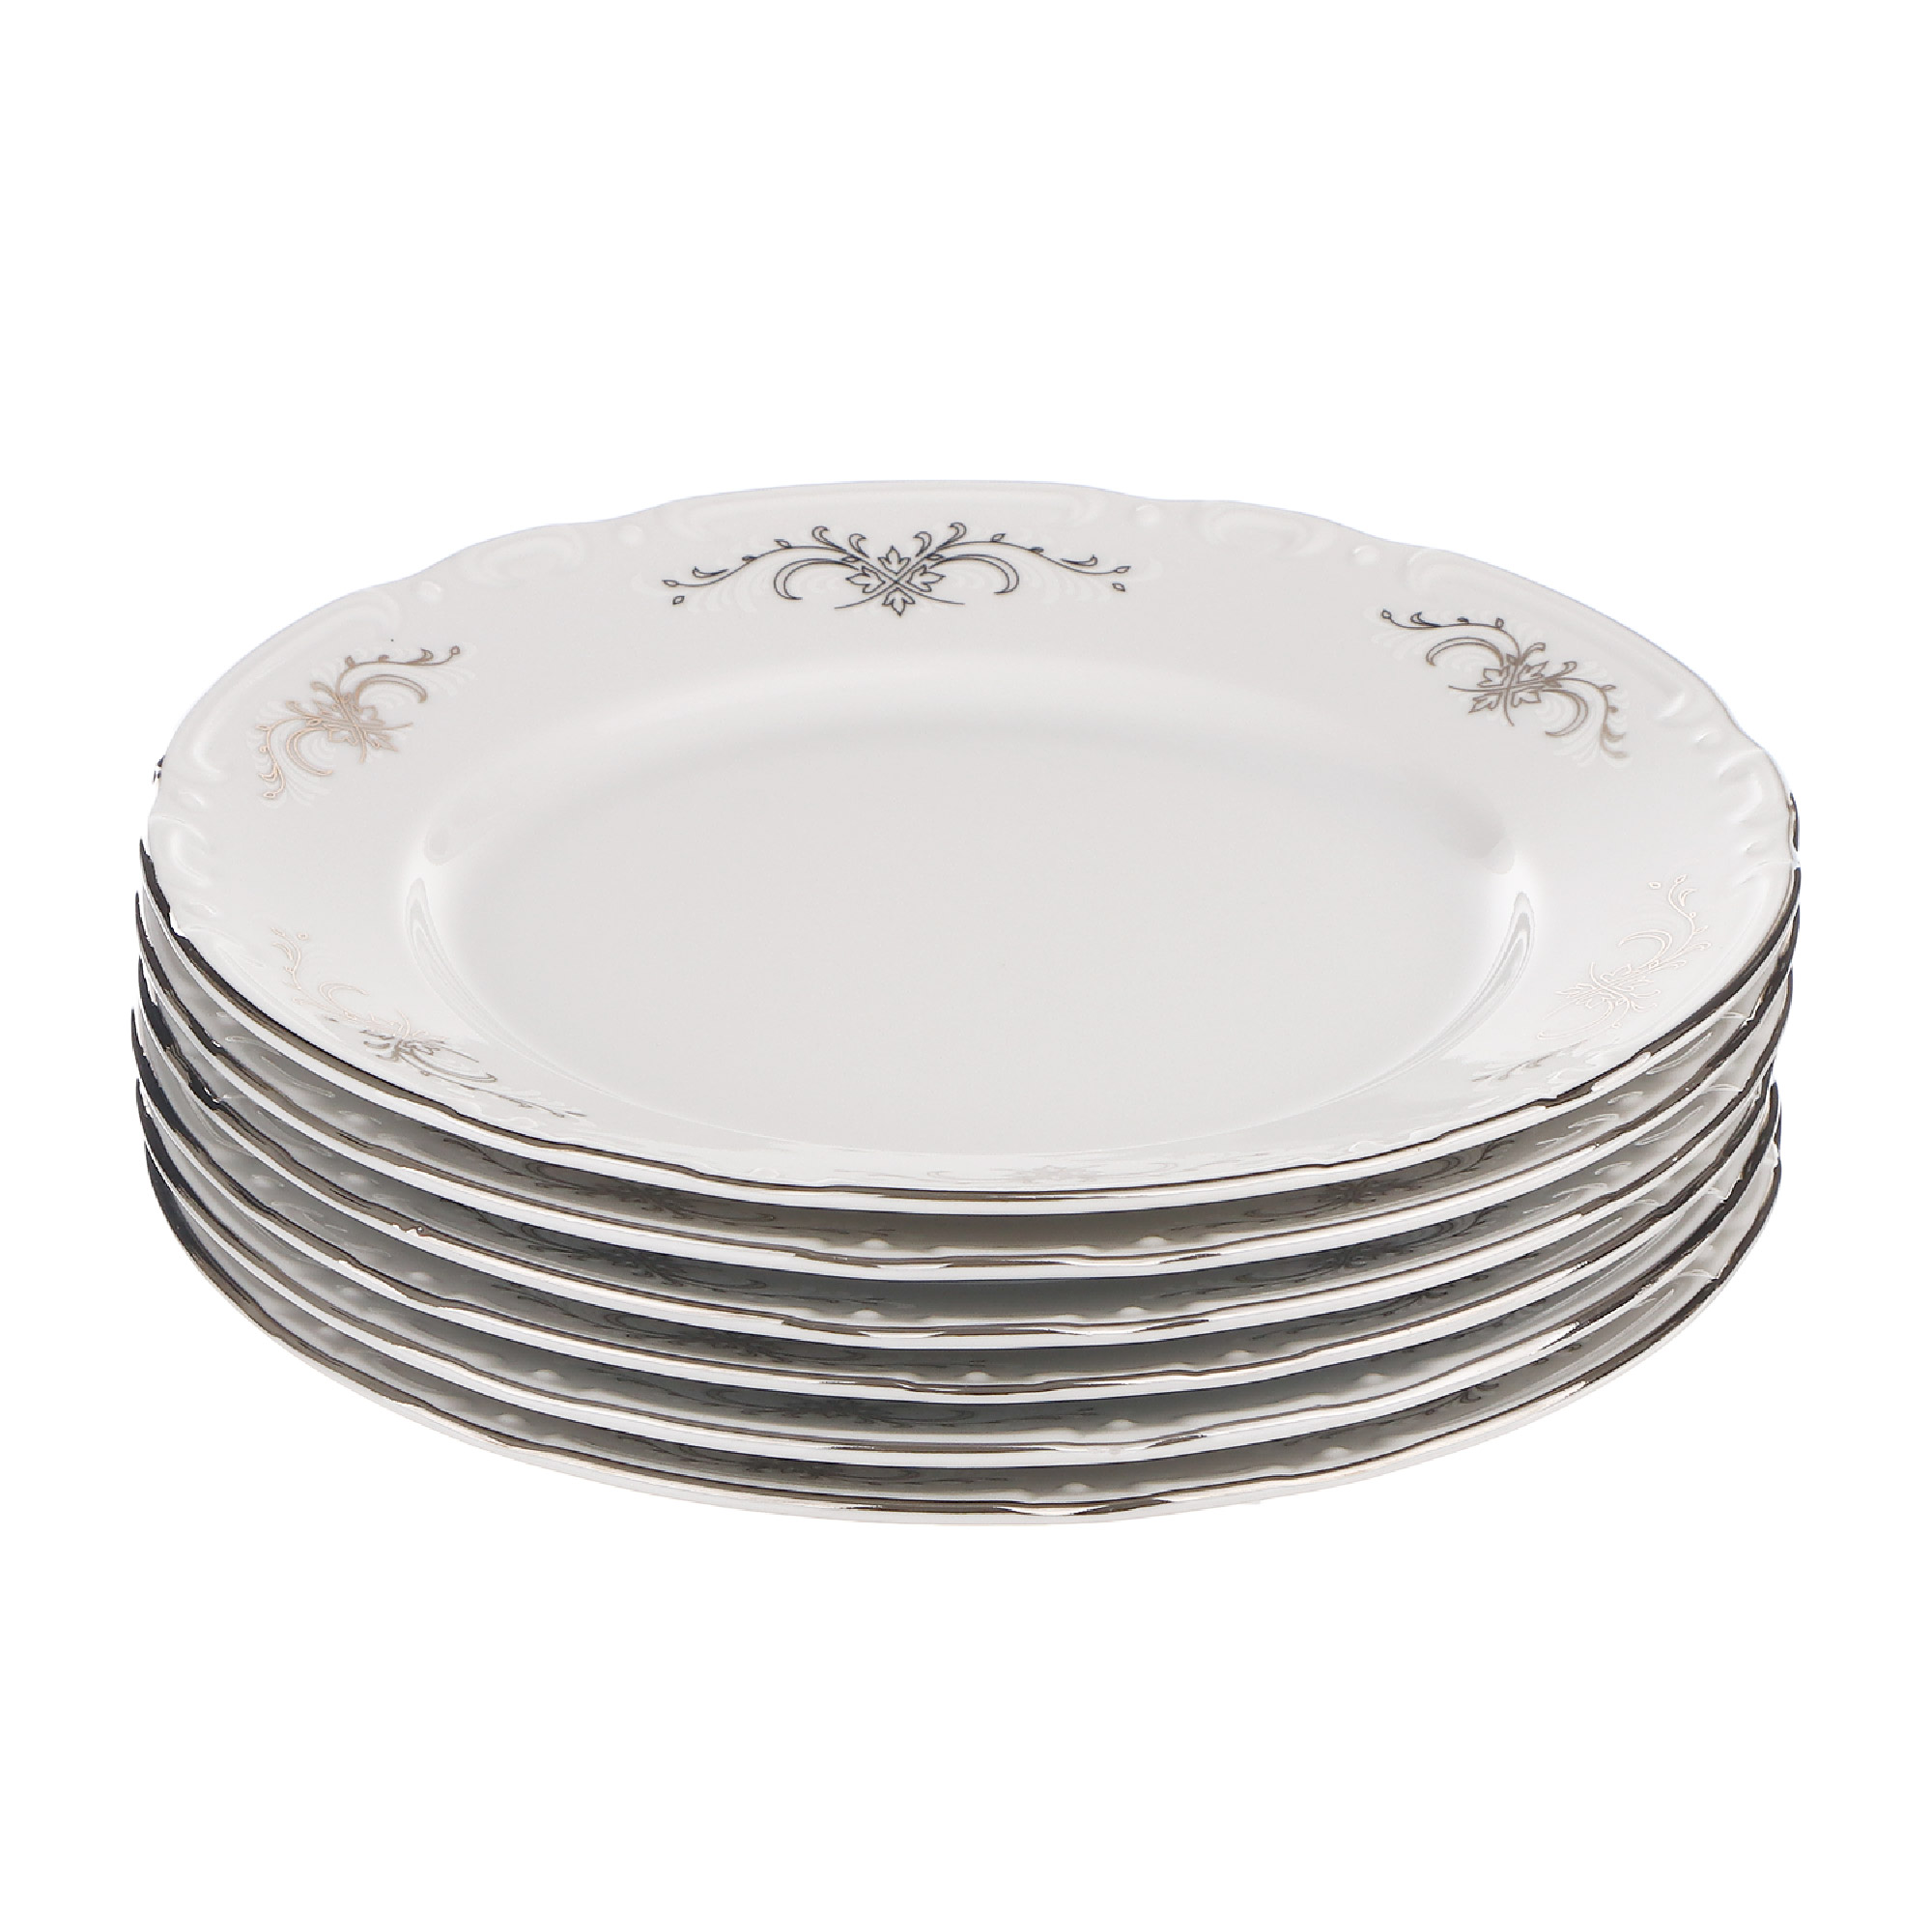 Набор десертных тарелок Thun1794 Констанция 17 см 6 шт набор тарелок глубоких 23 см 6шт thun1794 белоснежный тюльпан золотые держатели